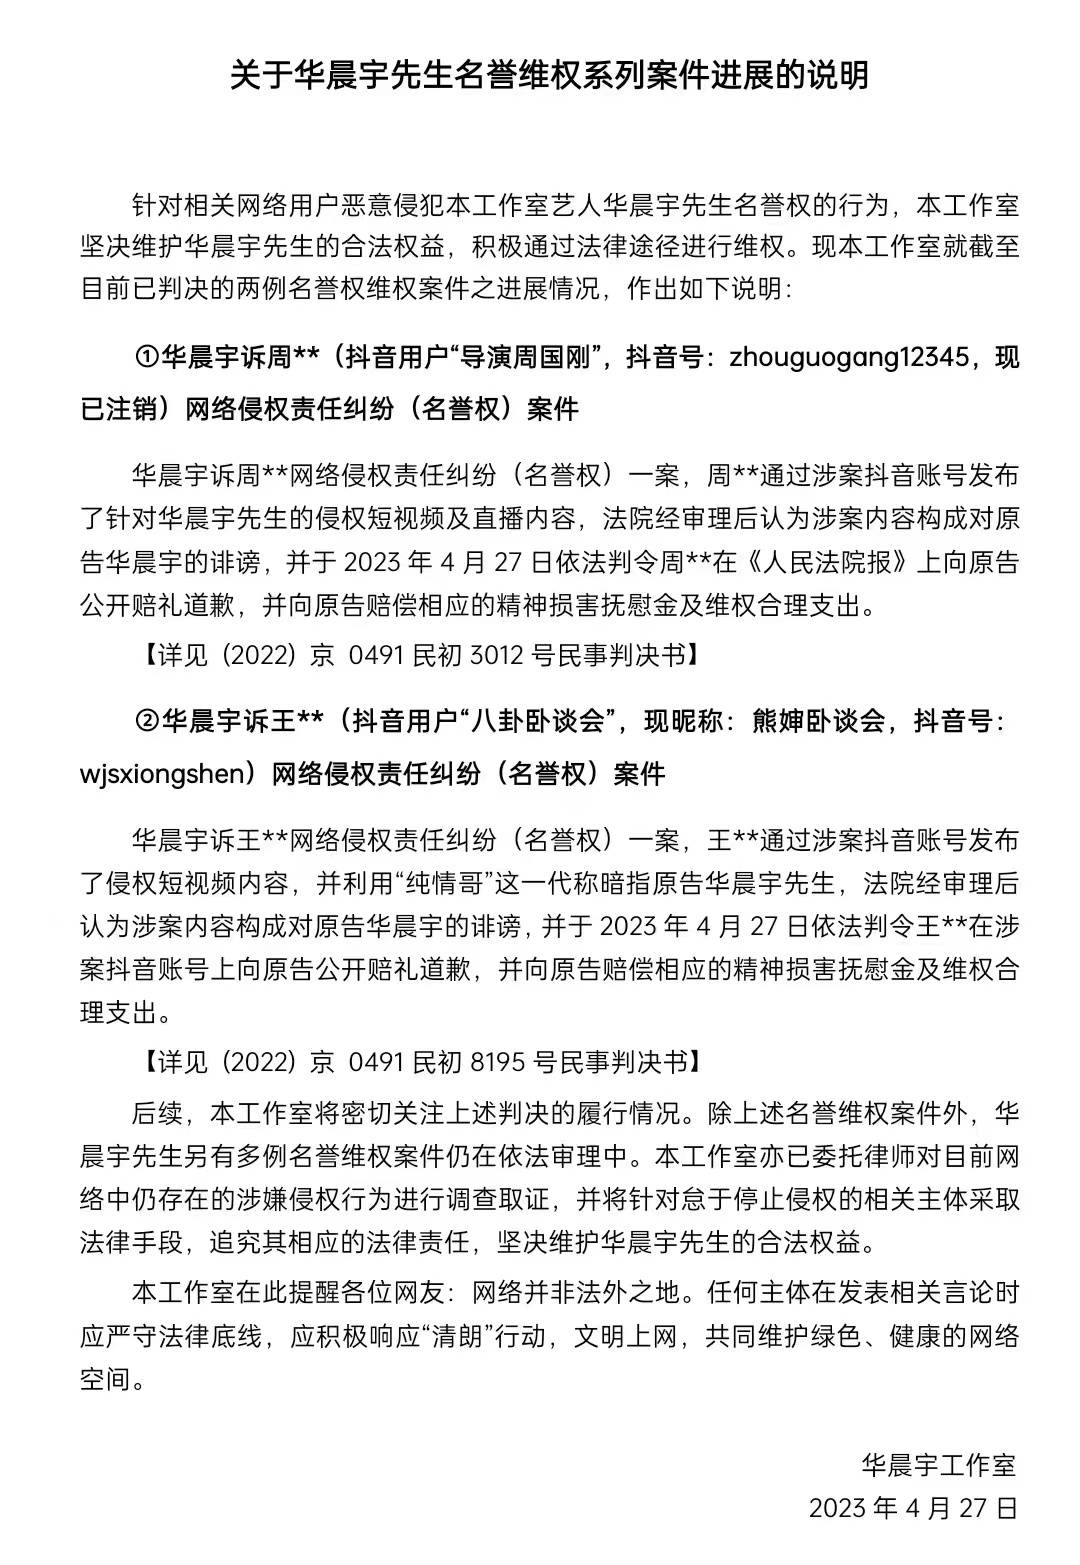 华晨宇两起名誉维权案件胜诉 被告将公开道歉并赔偿